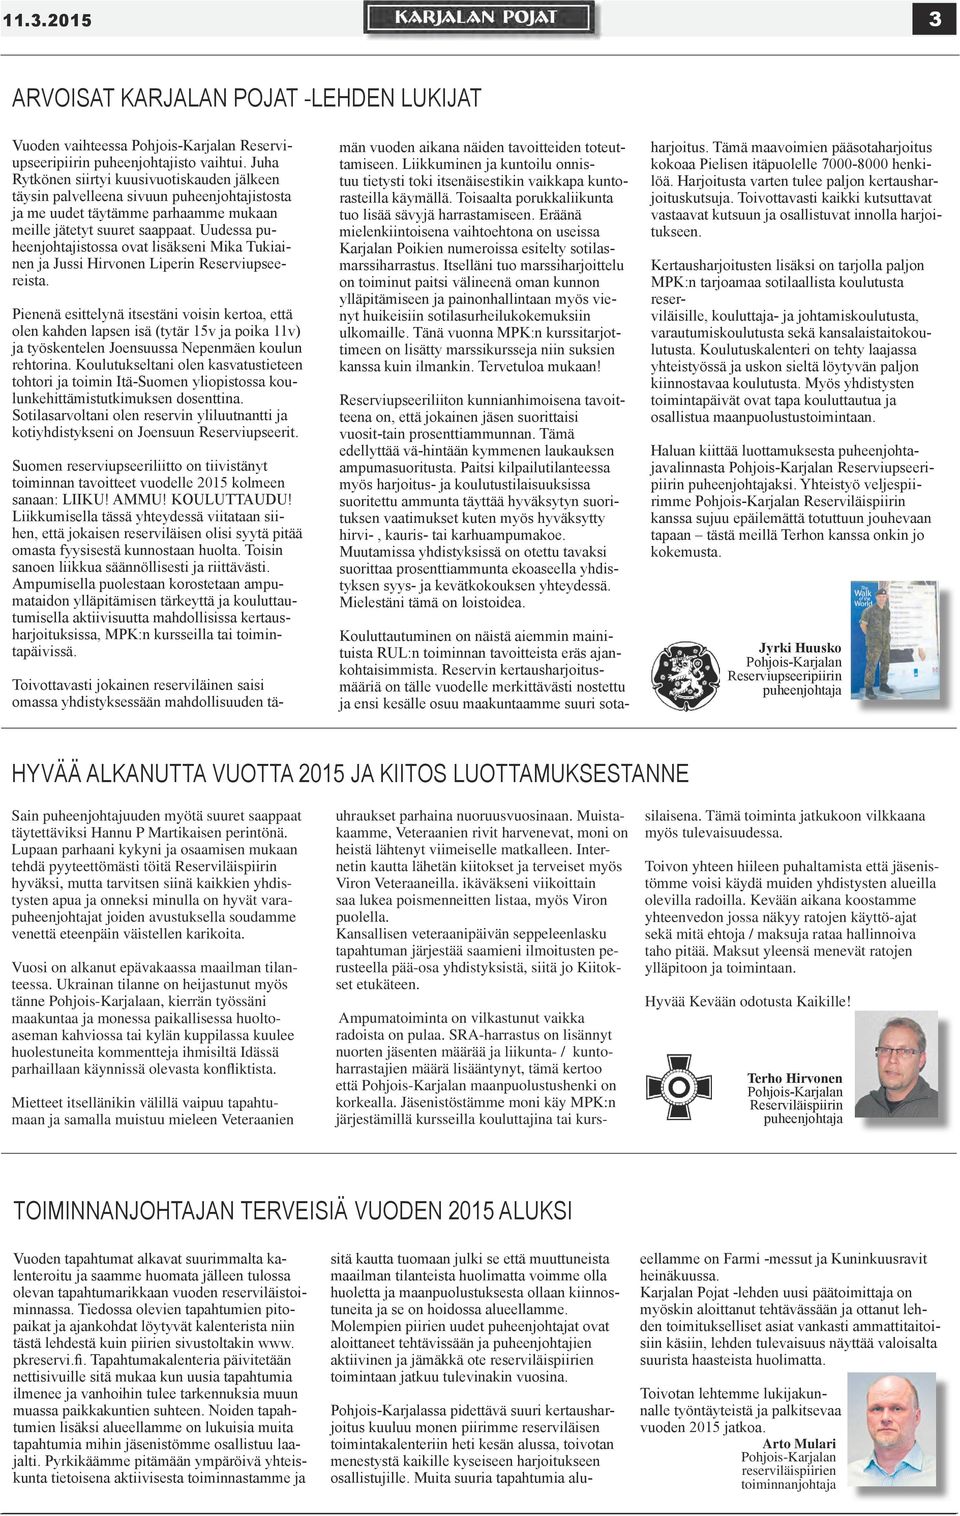 Uudessa puheenjohtajistossa ovat lisäkseni Mika Tukiainen ja Jussi Hirvonen Liperin Reserviupseereista.